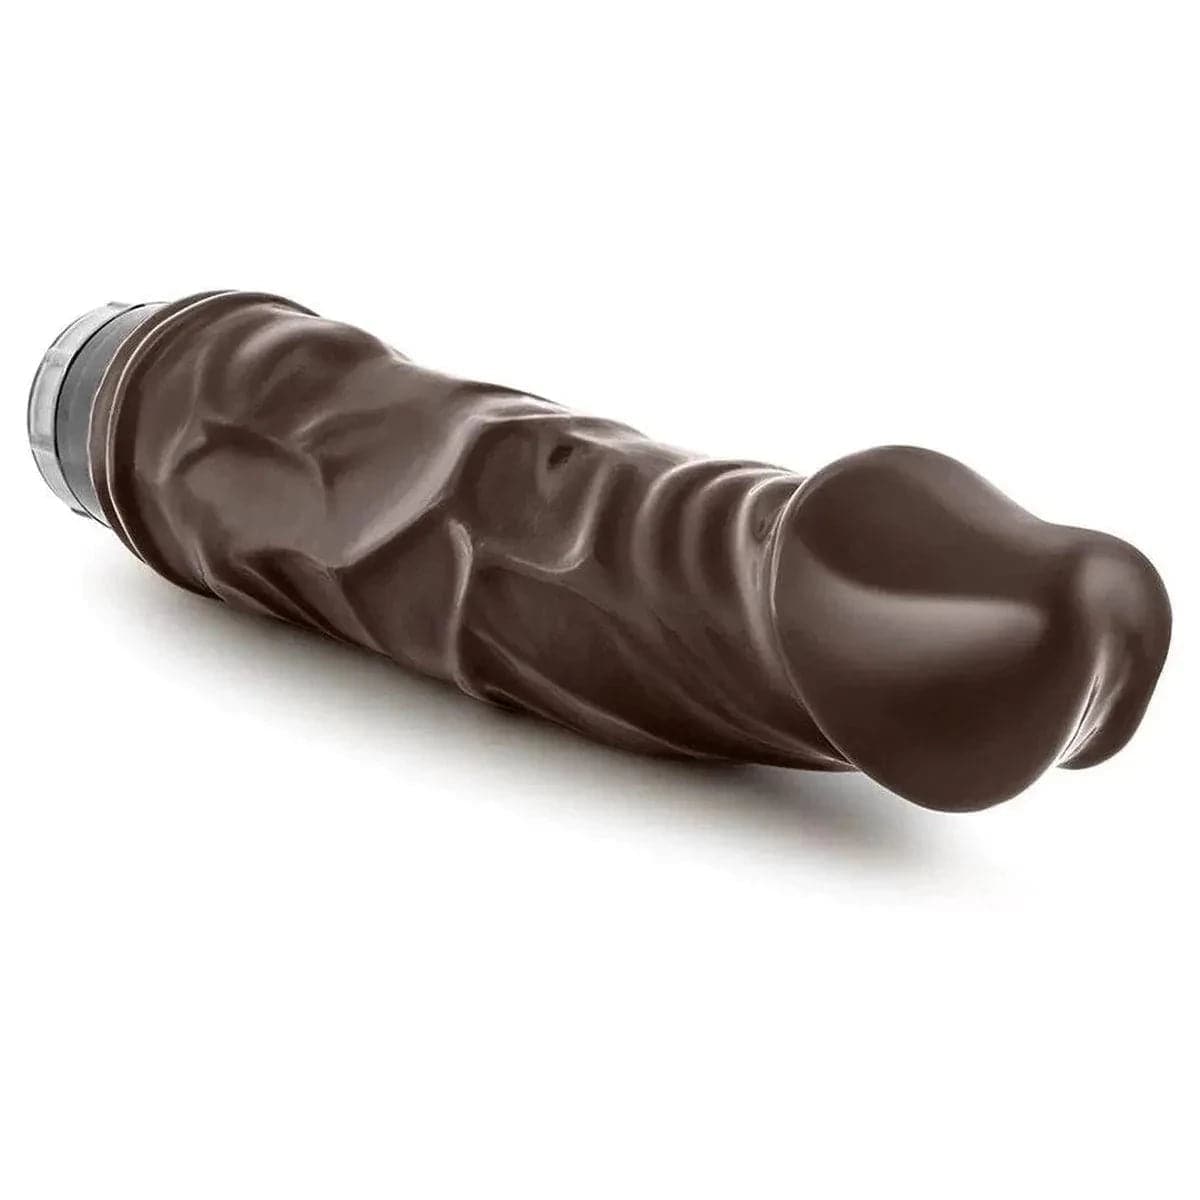 Vibrador Dr. Skin Vibe 6 Chocolate, 23cm Ø4.5cm, vibração regulável  Blush Novelties   